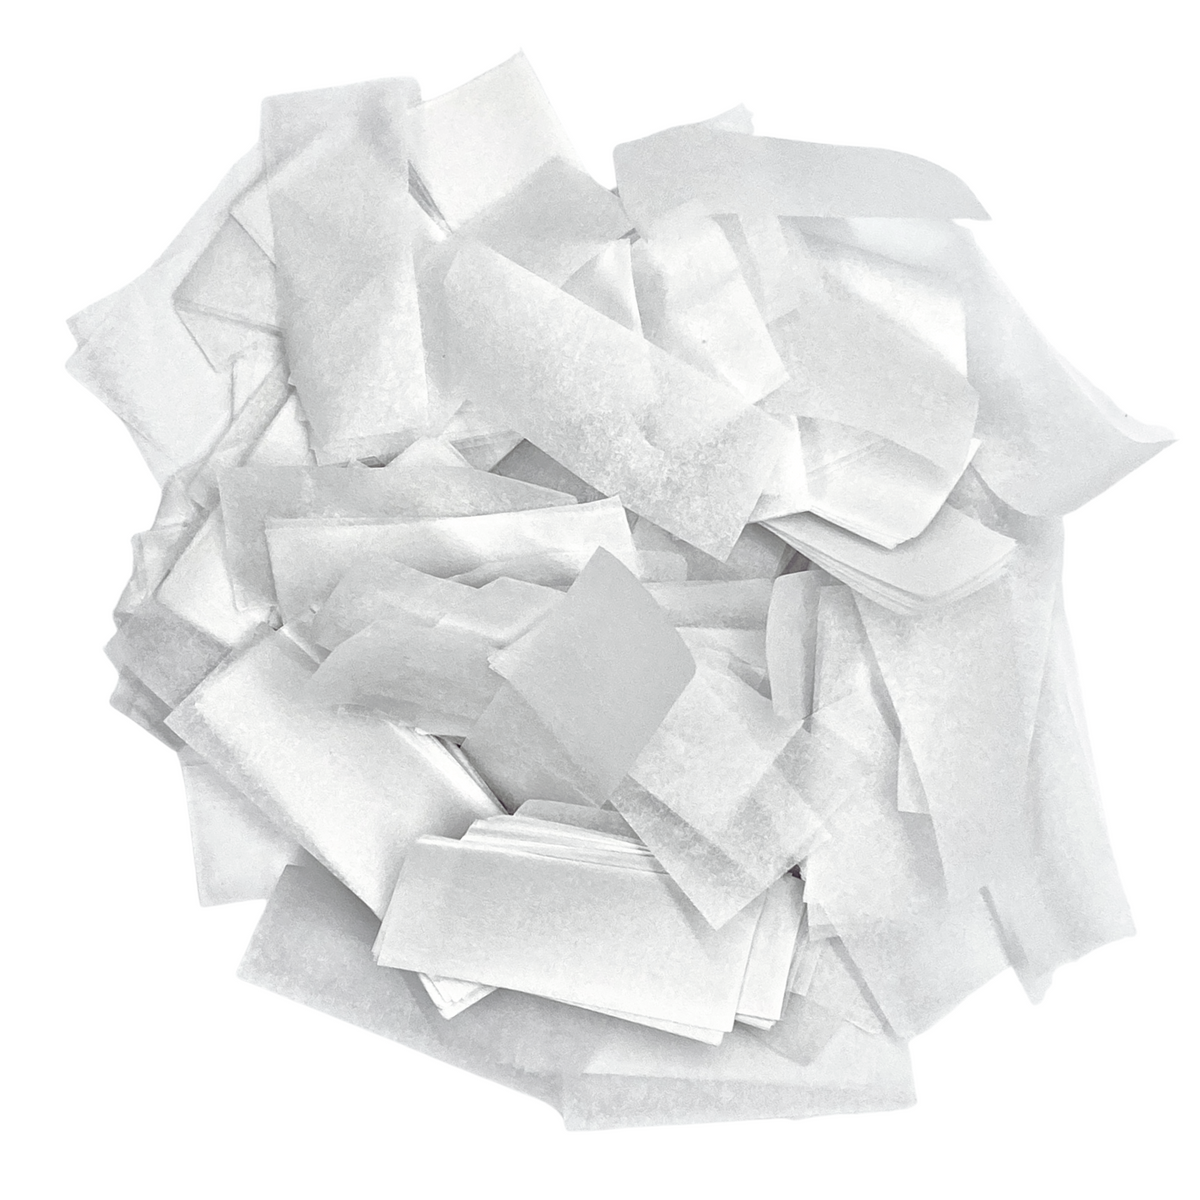 Pastel Yellow Tissue Paper Confetti (1 Pound Bulk) — Ultimate Confetti